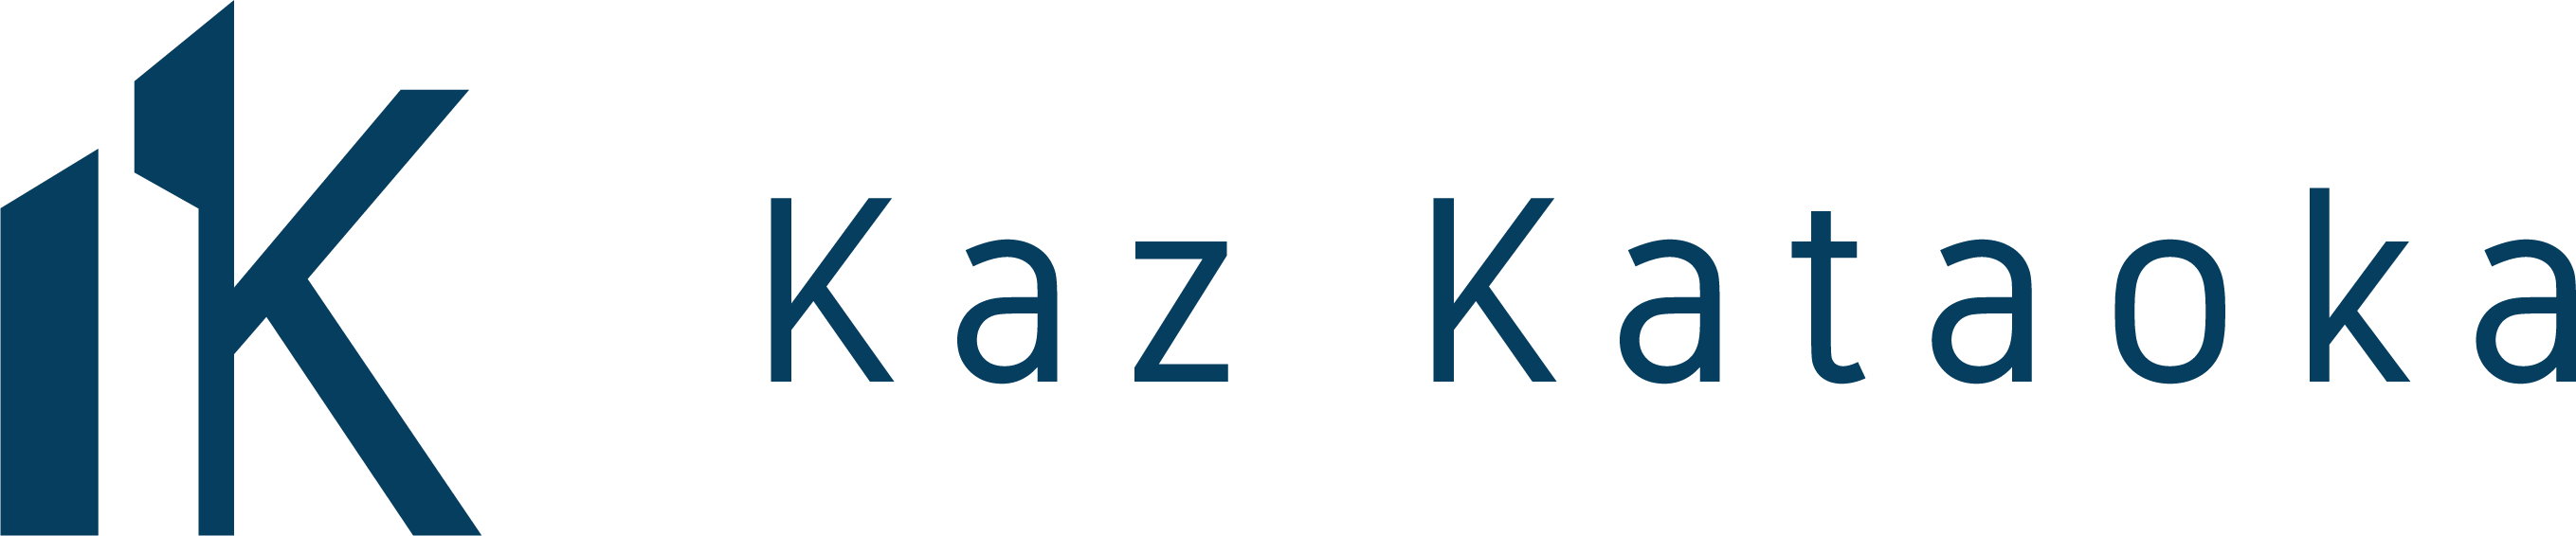 Kaz Estates